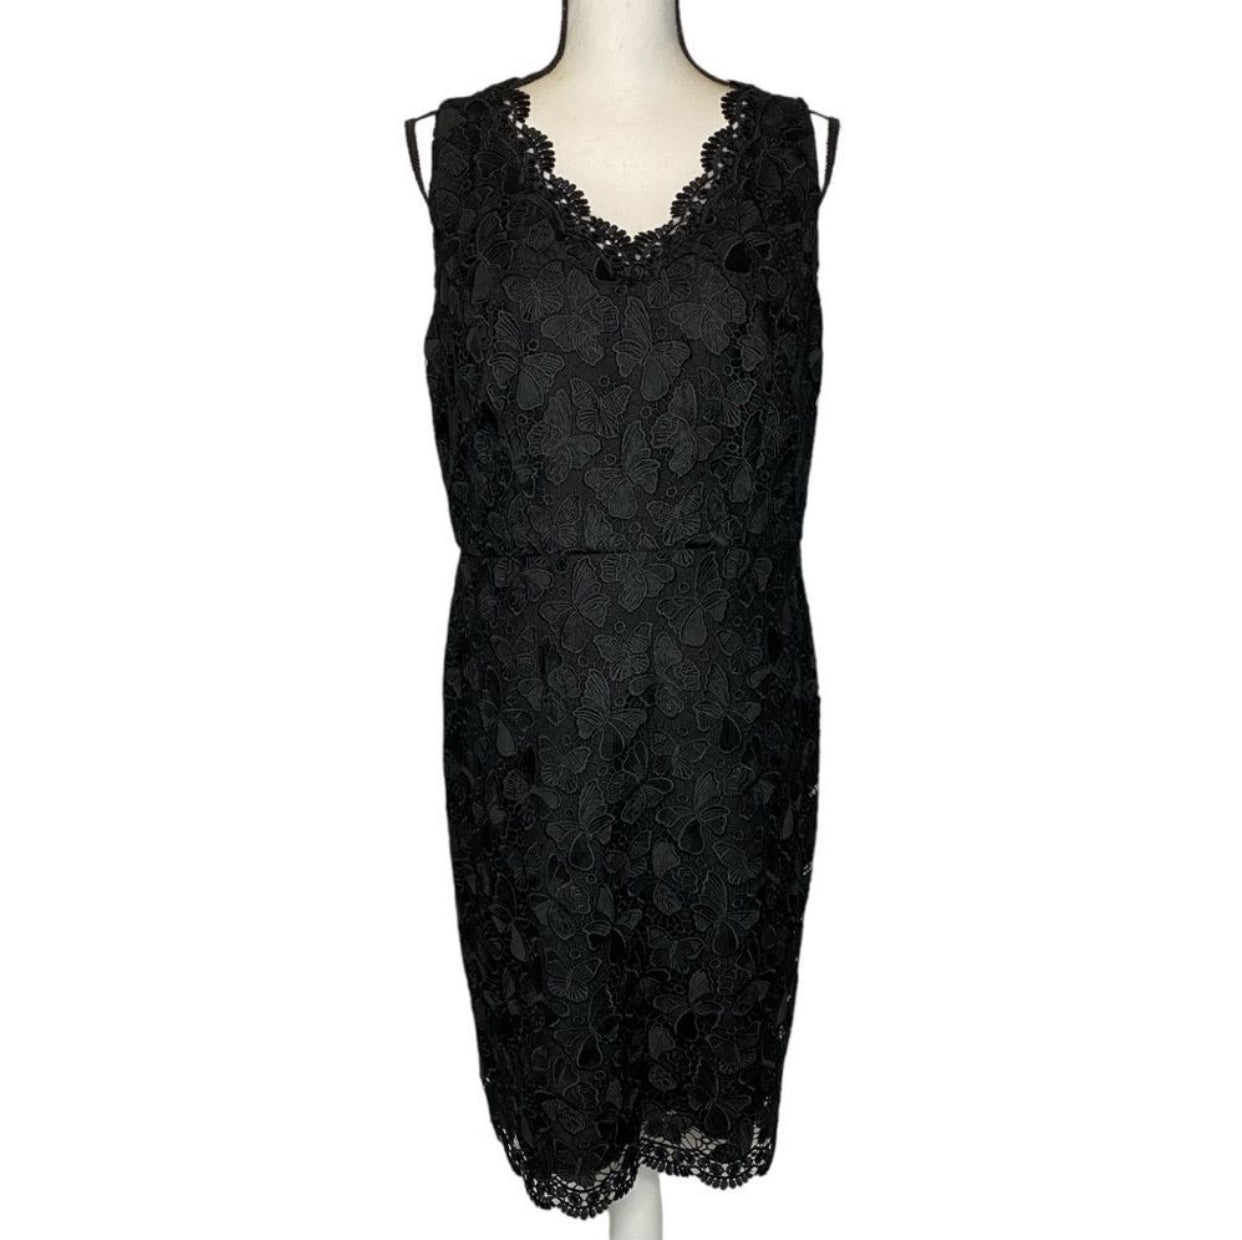 RSVP By Talbots Butterfly Black Lace Sheath Dress - Size 8